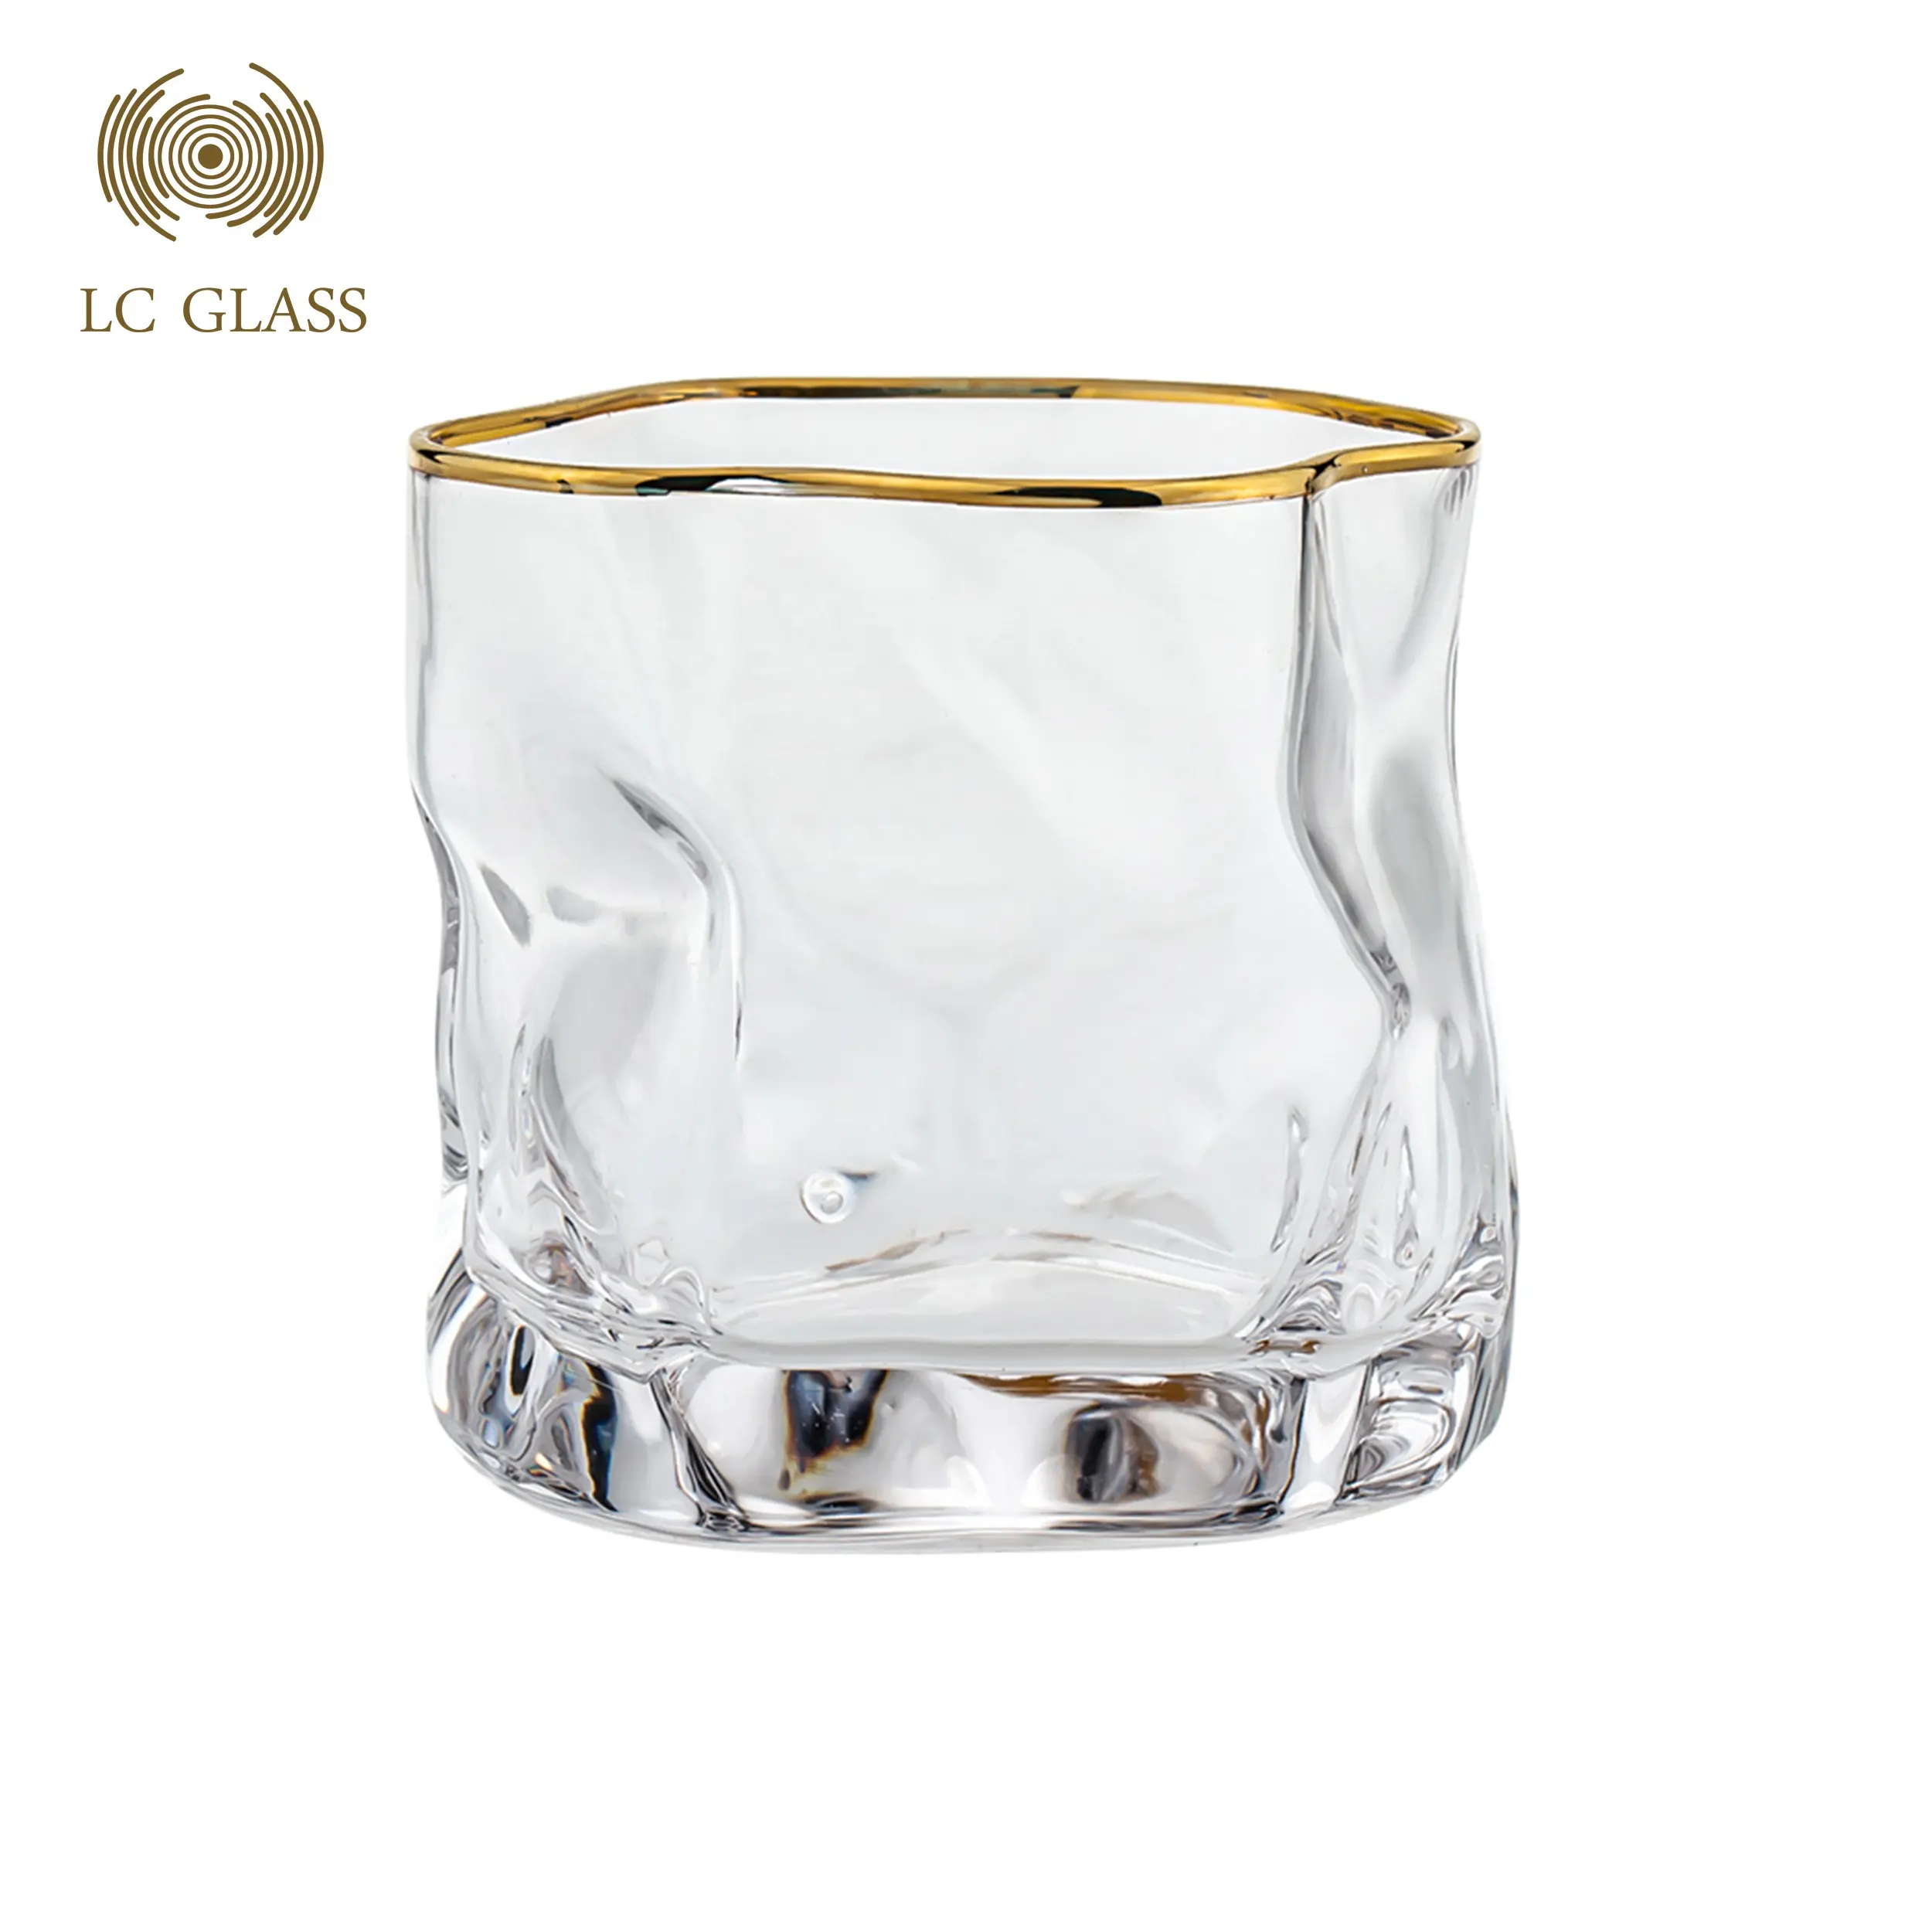 Best Selling In Amazion Premium Crystal 10 Oz. Whisky Glazen Set Gift Idee Voor Kerst Speciale Wijn Glas